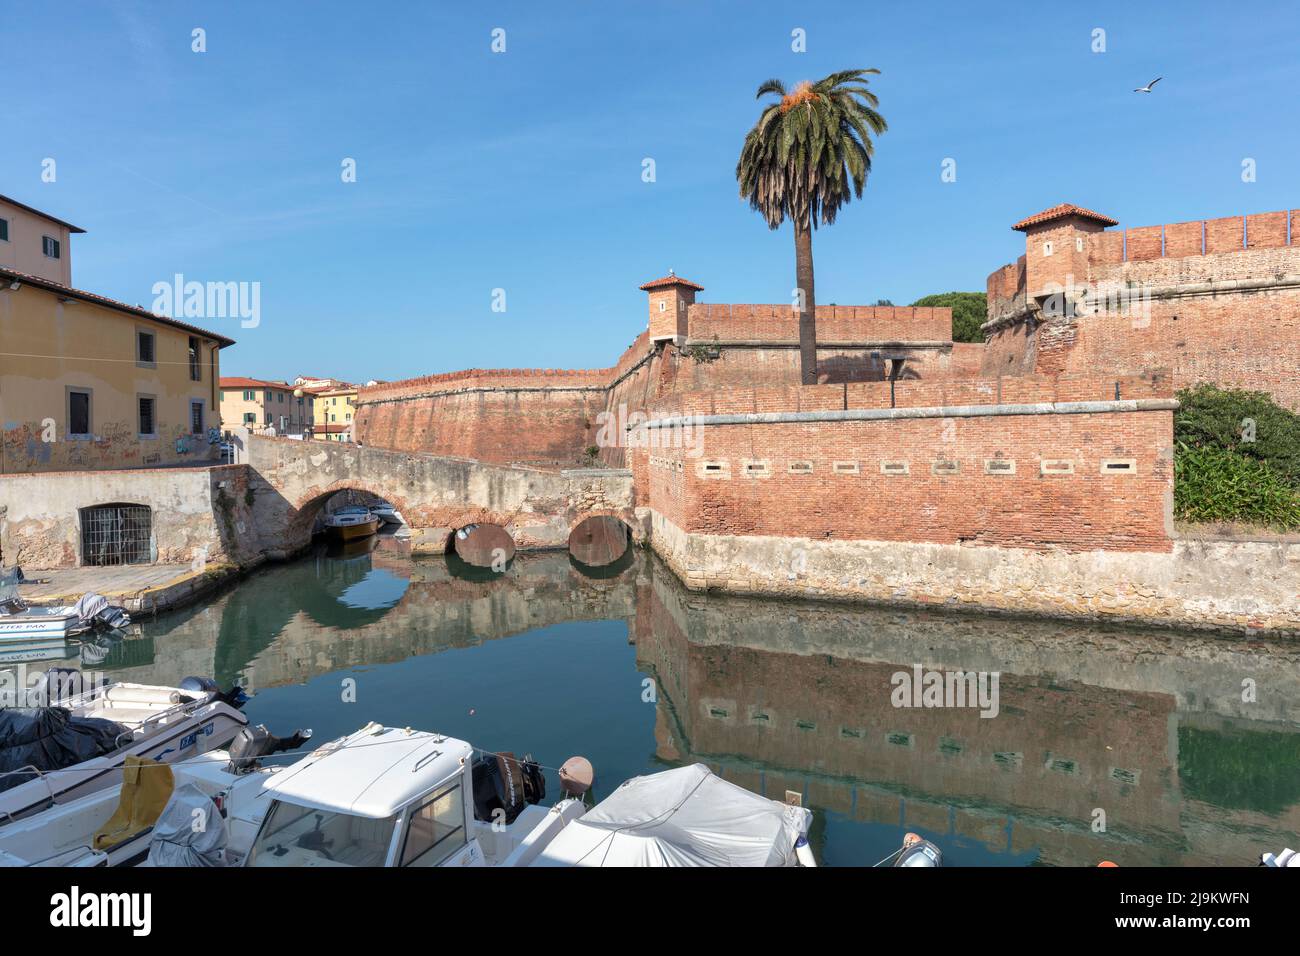 Fortezza Nuova, Festung im Jahr 1604 abgeschlossen, in Scali della Fortezza Nuova, umgeben von Booten in historischen Kanal, Livorno, Toskana, Italien Stockfoto